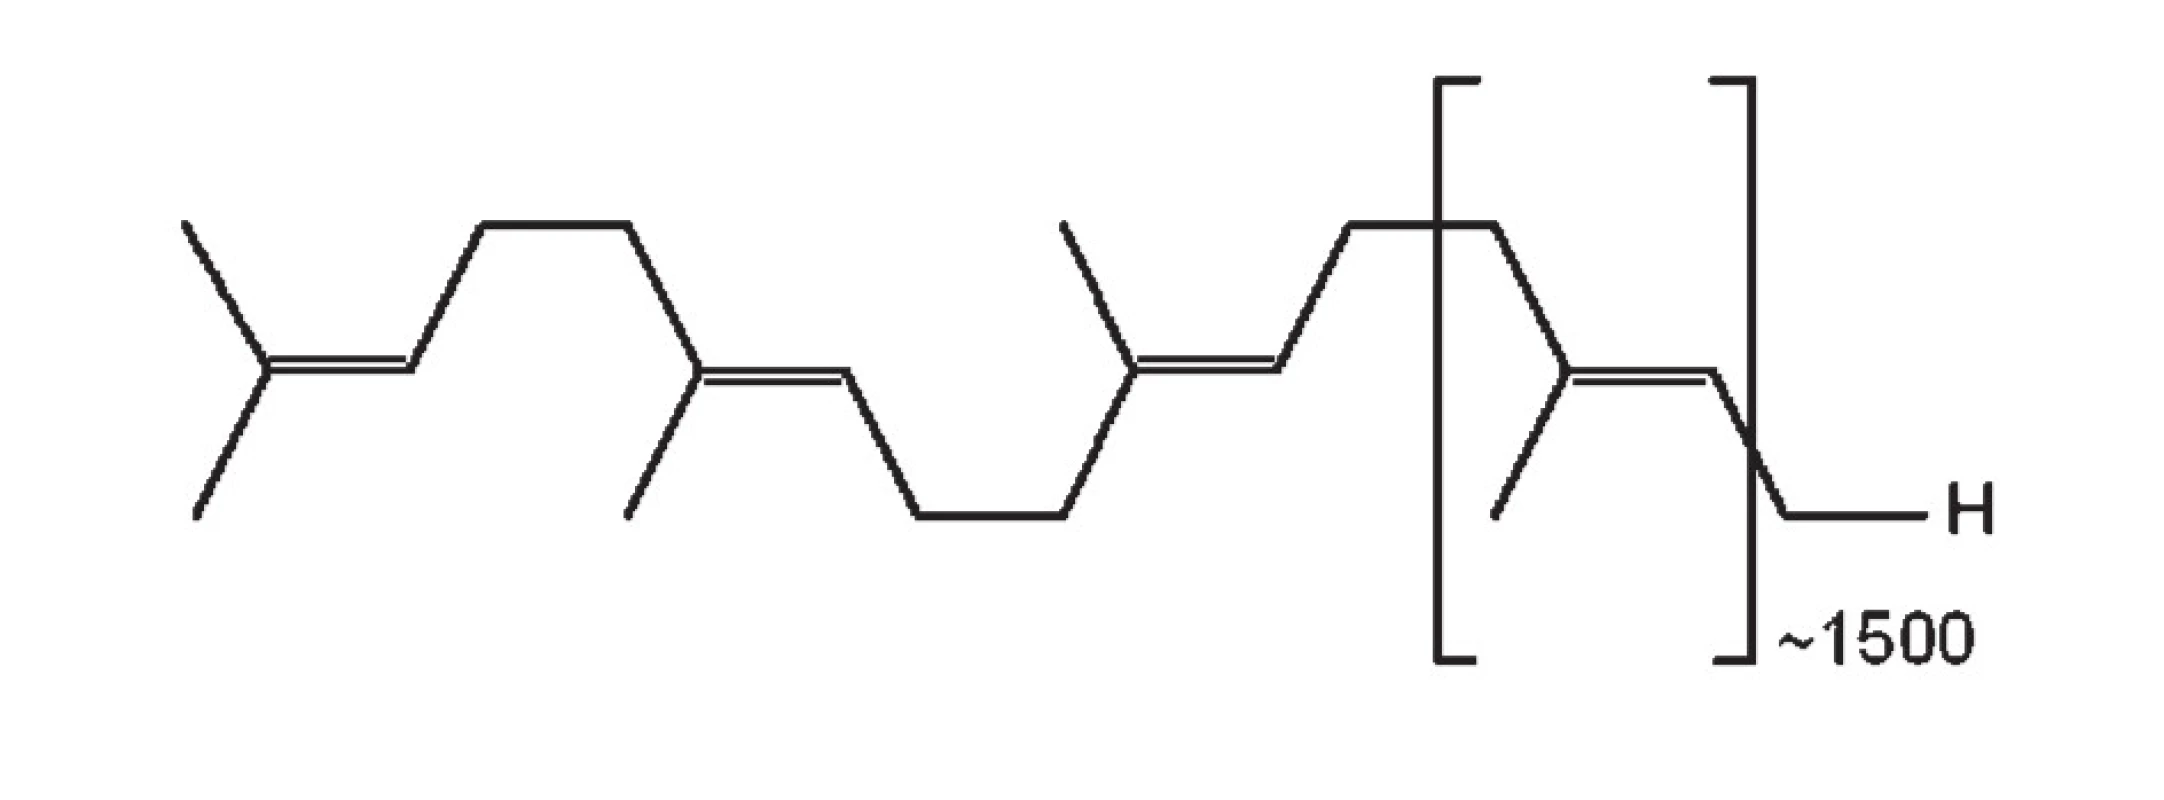 Chemický vzorec gutaperče; trans-1,4-polyizoprén [4]